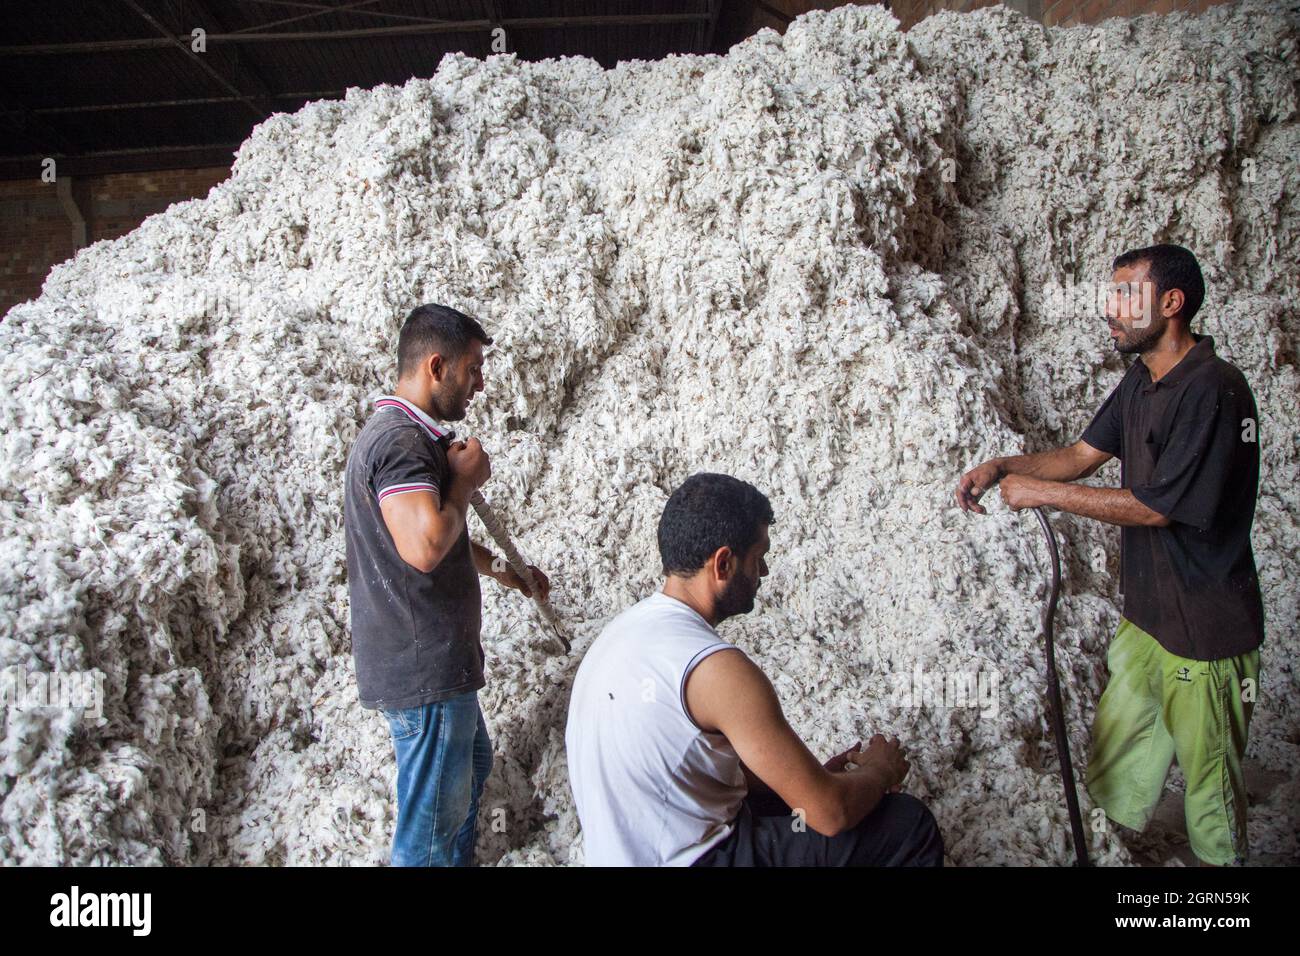 Adana/Turkey-09/27/2014:gli operai non identificati raccolgono il batuffolo di cotone per il processo di sgranatura ad un gin di cotone. Foto Stock